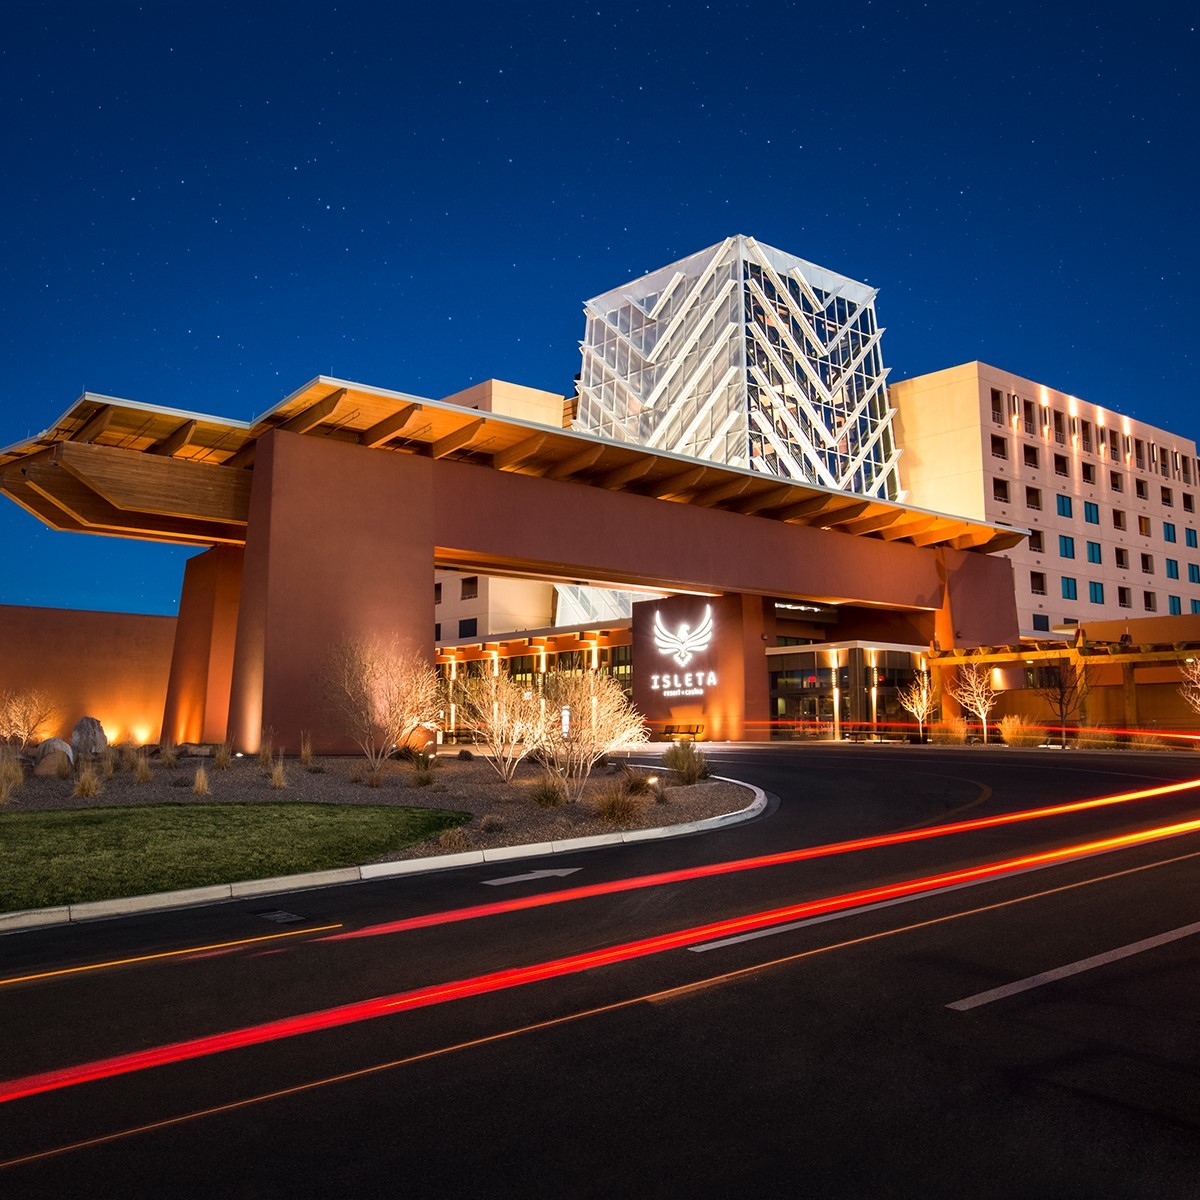 Photo of Isleta Resort & Casino, Albuquerque, NM